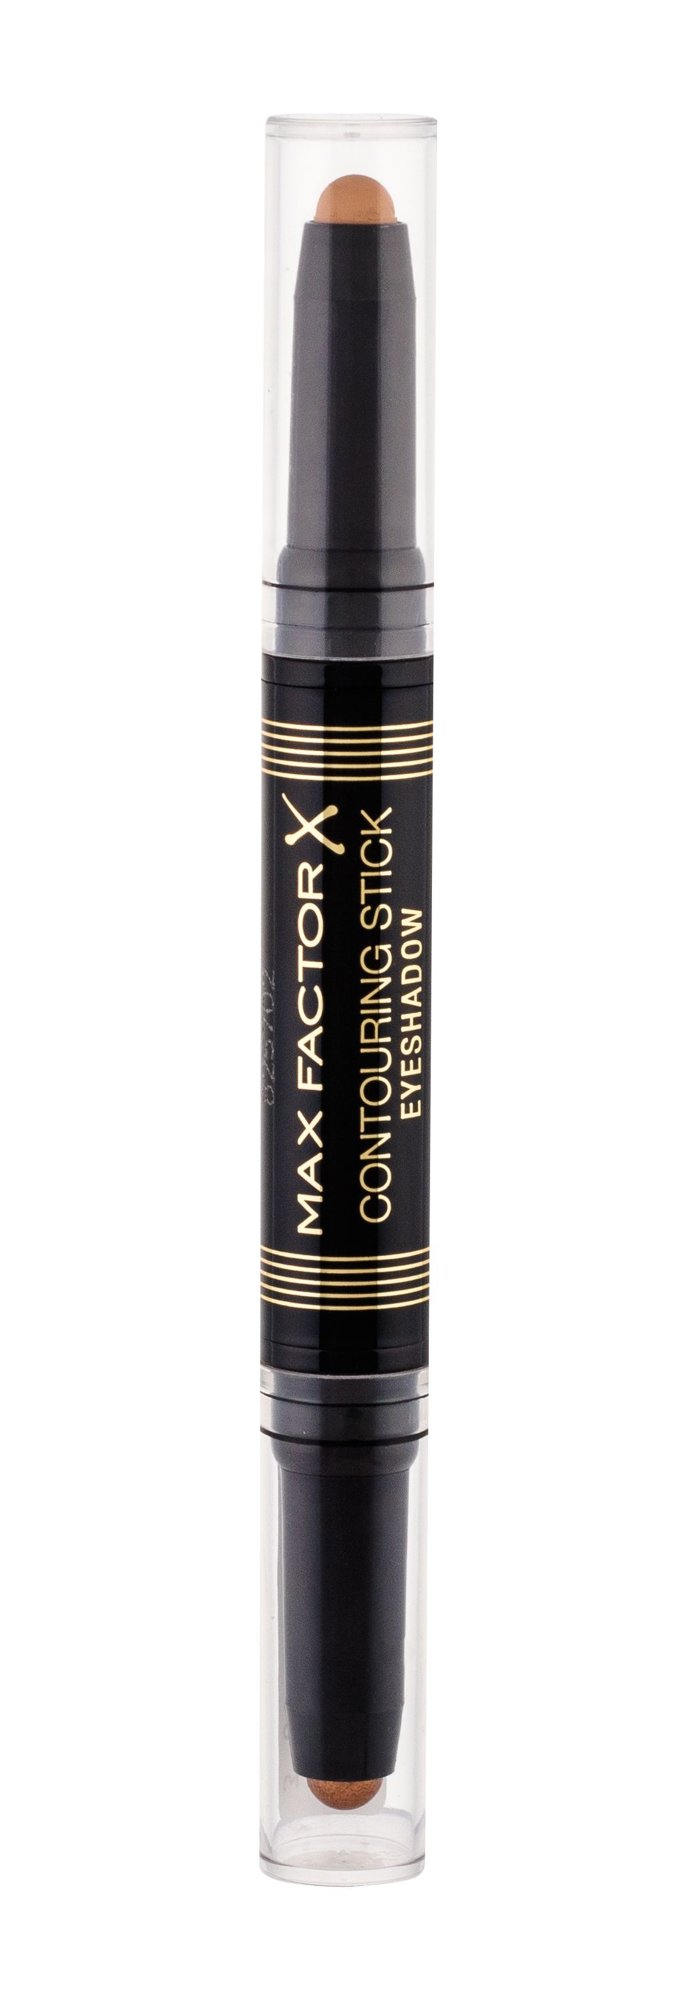 Max Factor Contouring Stick Eyeshadow 5g šešėliai